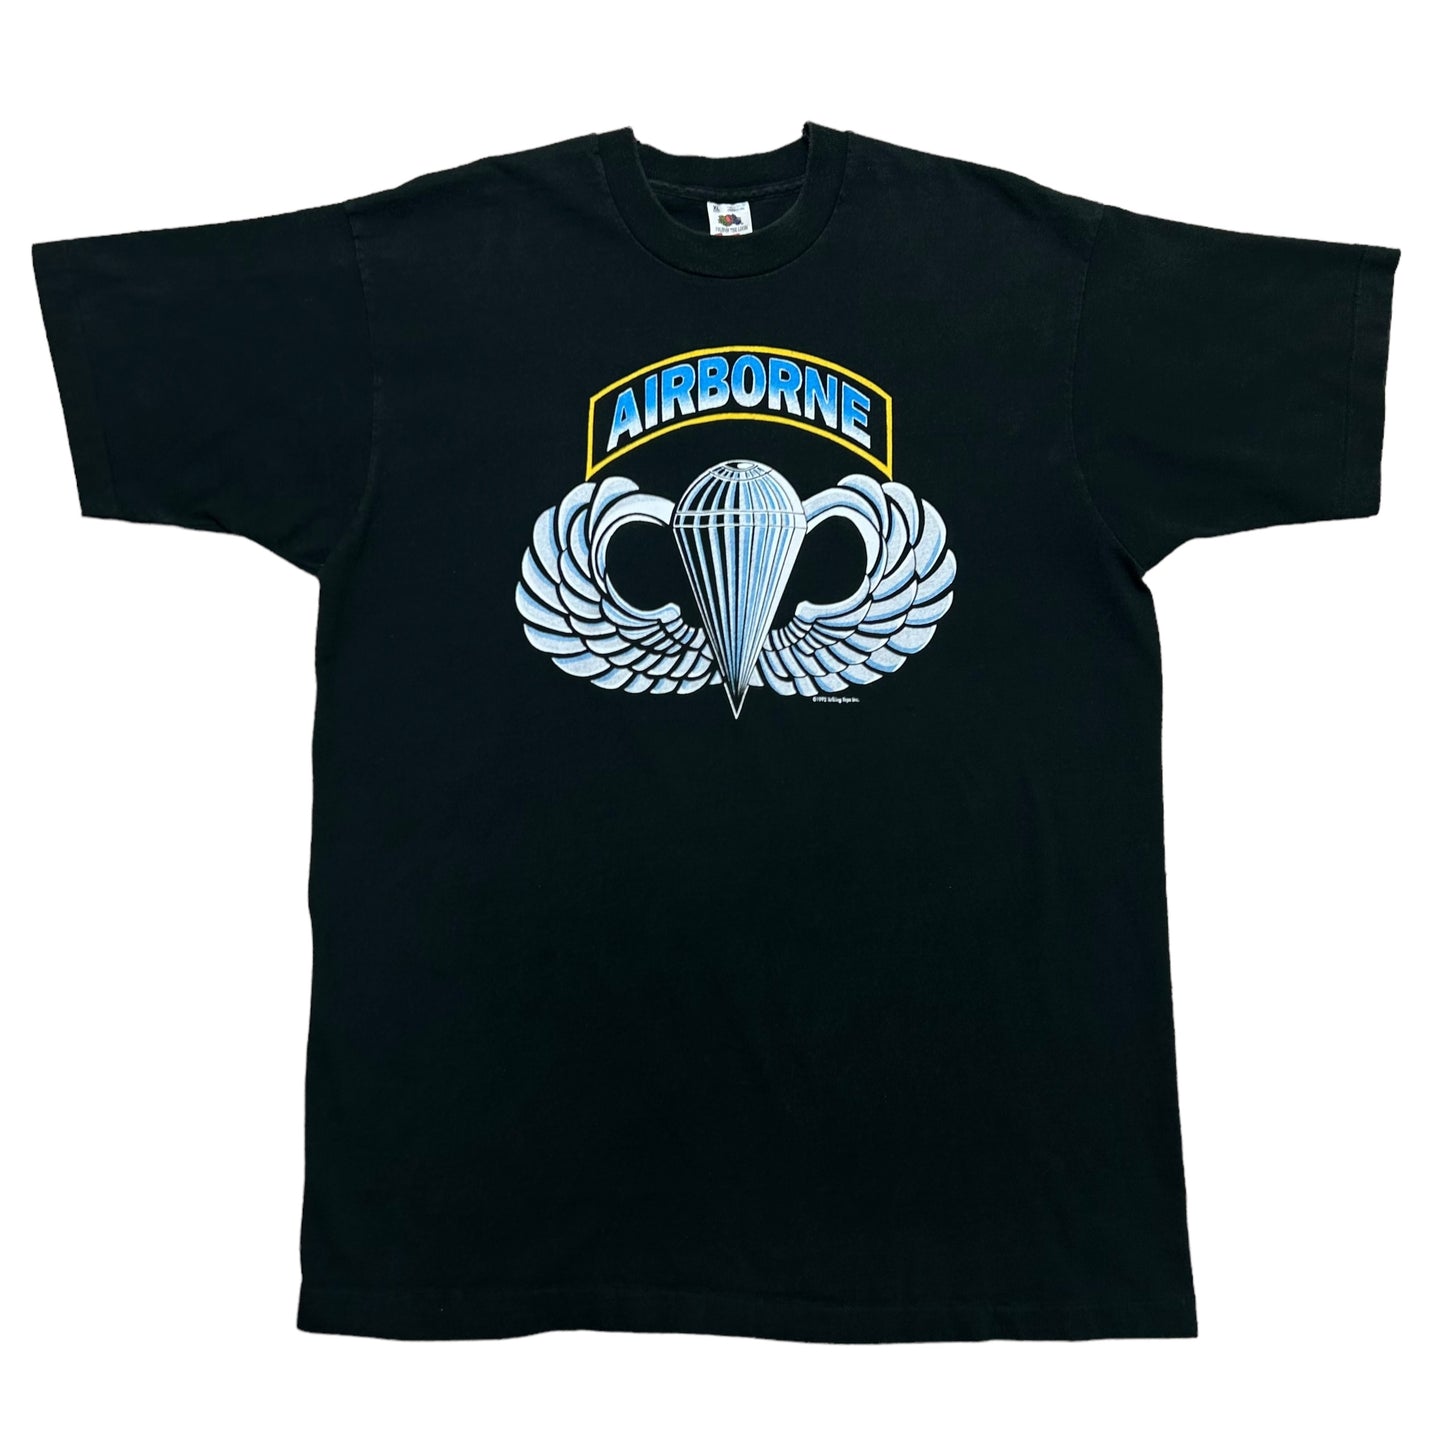 Vintage 1990s Airborne Paratrooper Black Graphic T-Shirt - Size XL